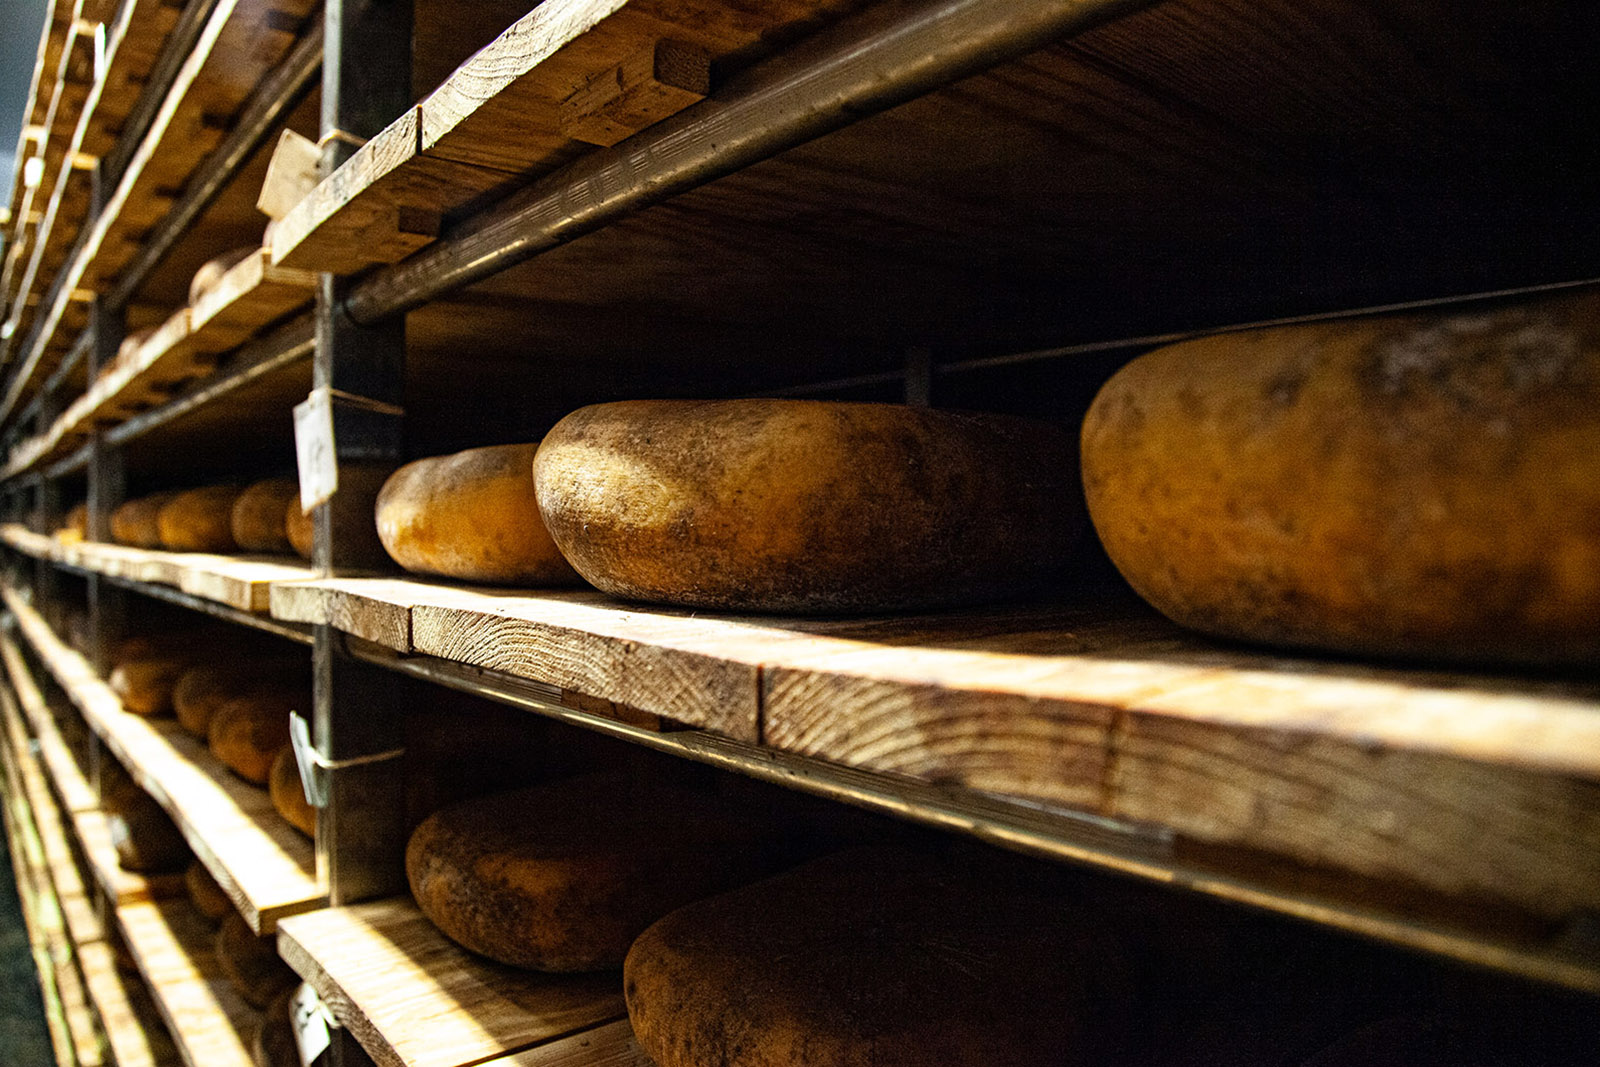 mage foto13-lugares de aventura-como descubrir los secretos mejor guardados y autenticos de menorca-cava de quesos-julia-miralles.jpg